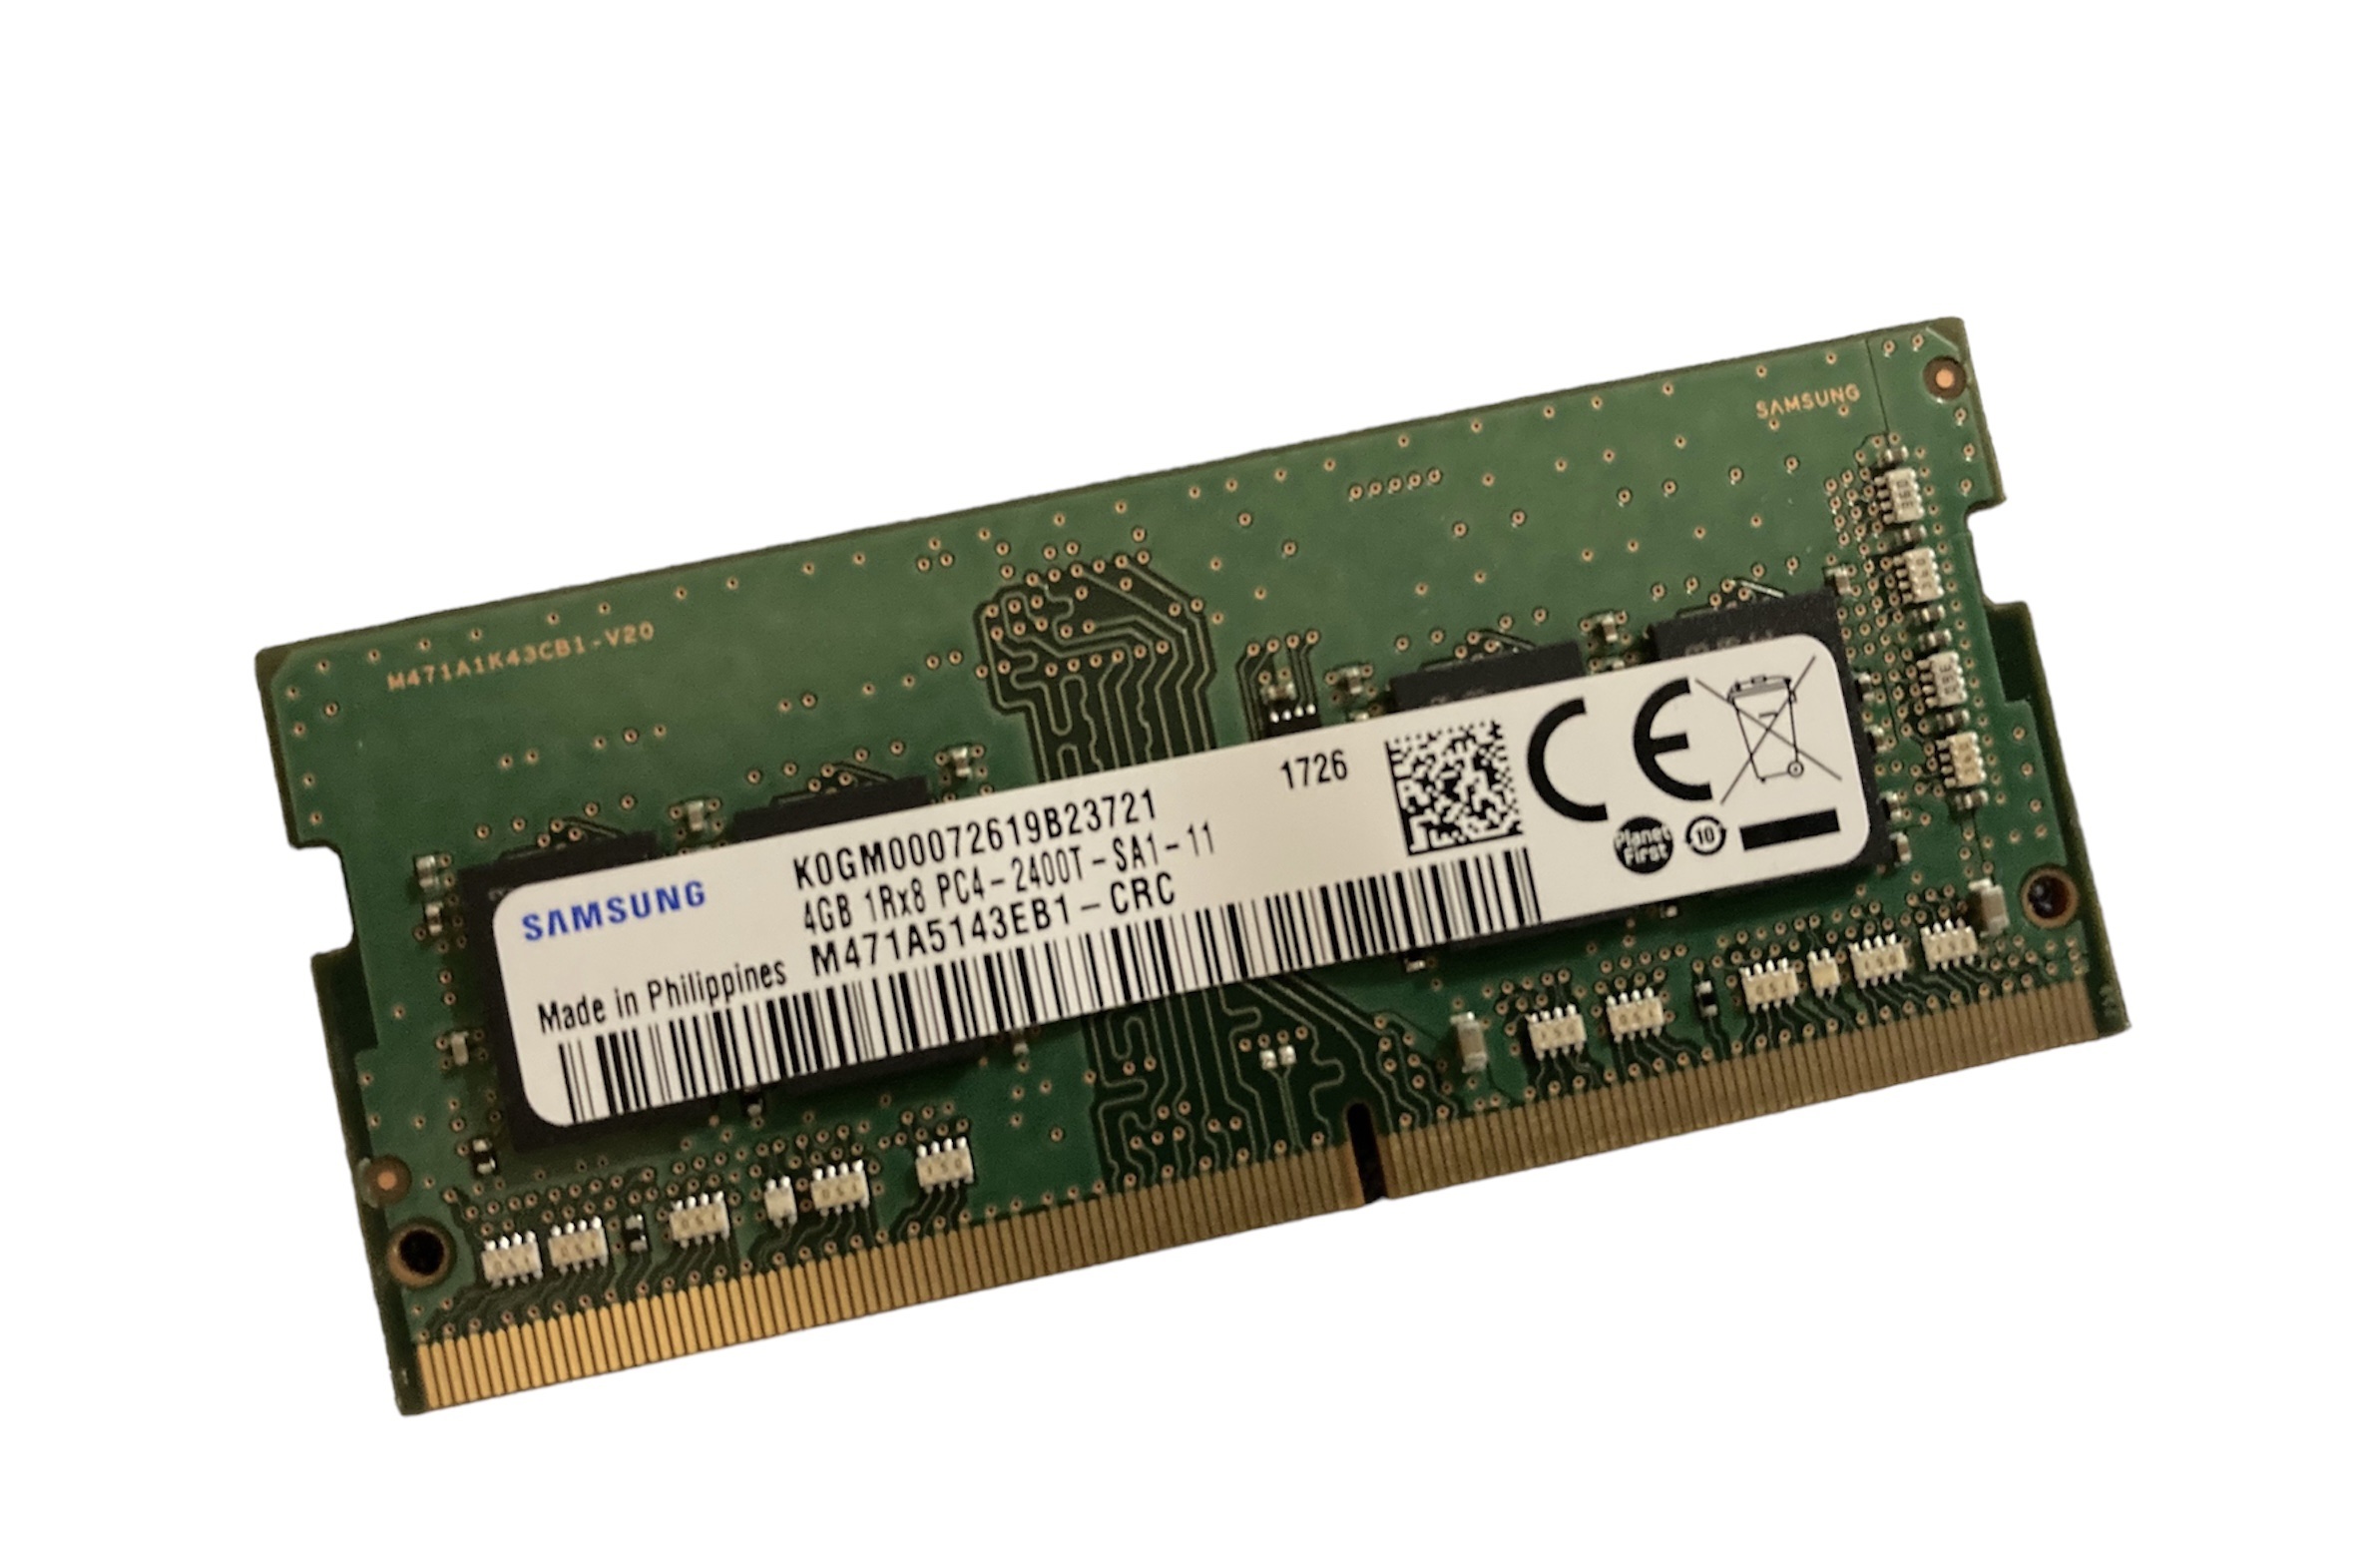 Barette de Mémoire RAM 4Go Samsung PC4-2400T-SA1-11 - DOM ACCESS